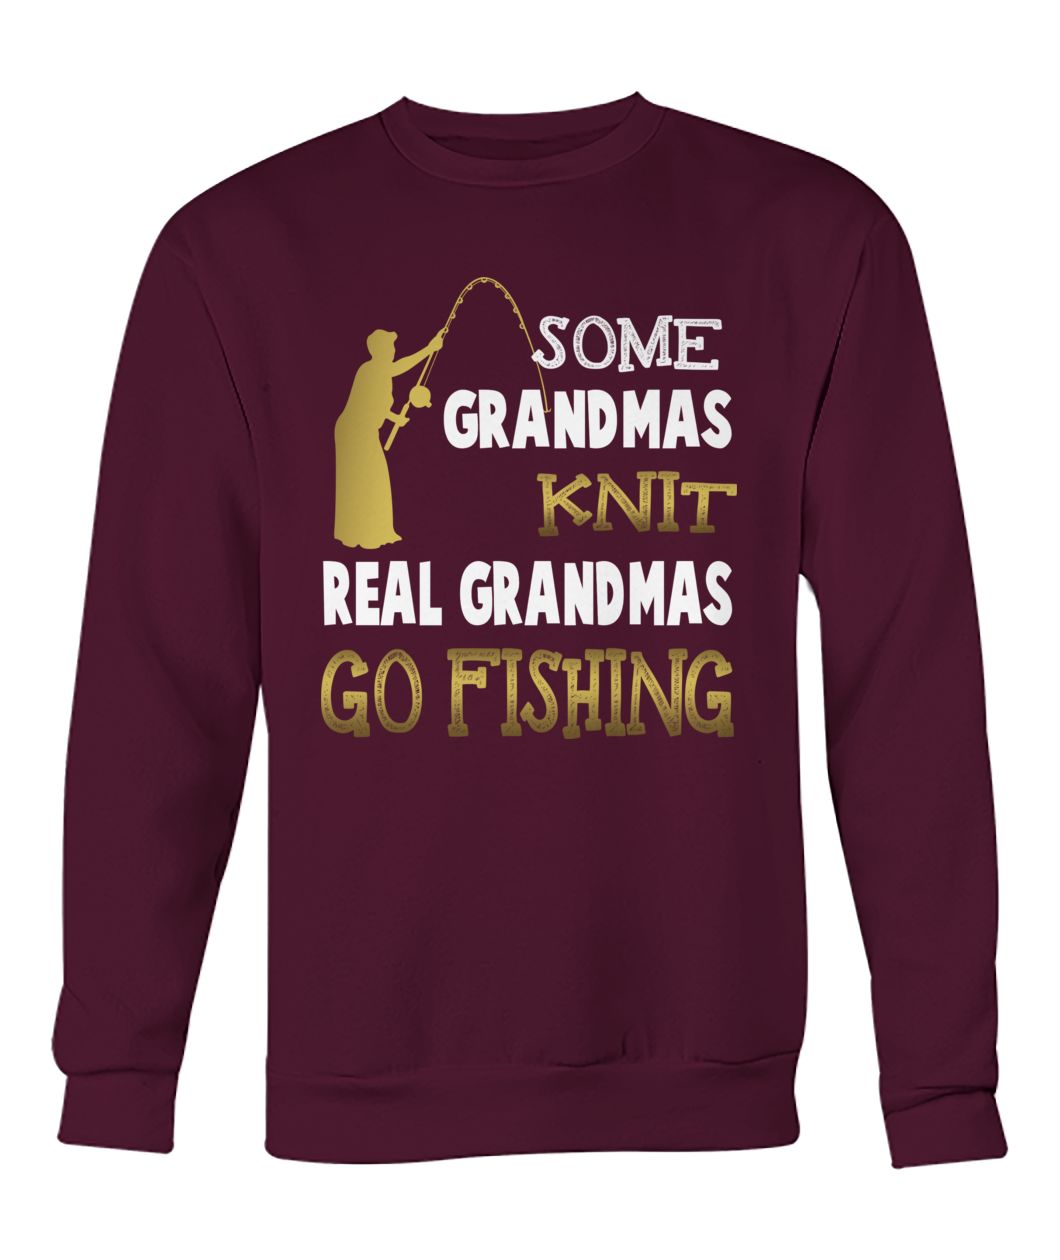 Some grandmas knit real grandmas go fishing crew neck sweatshirt